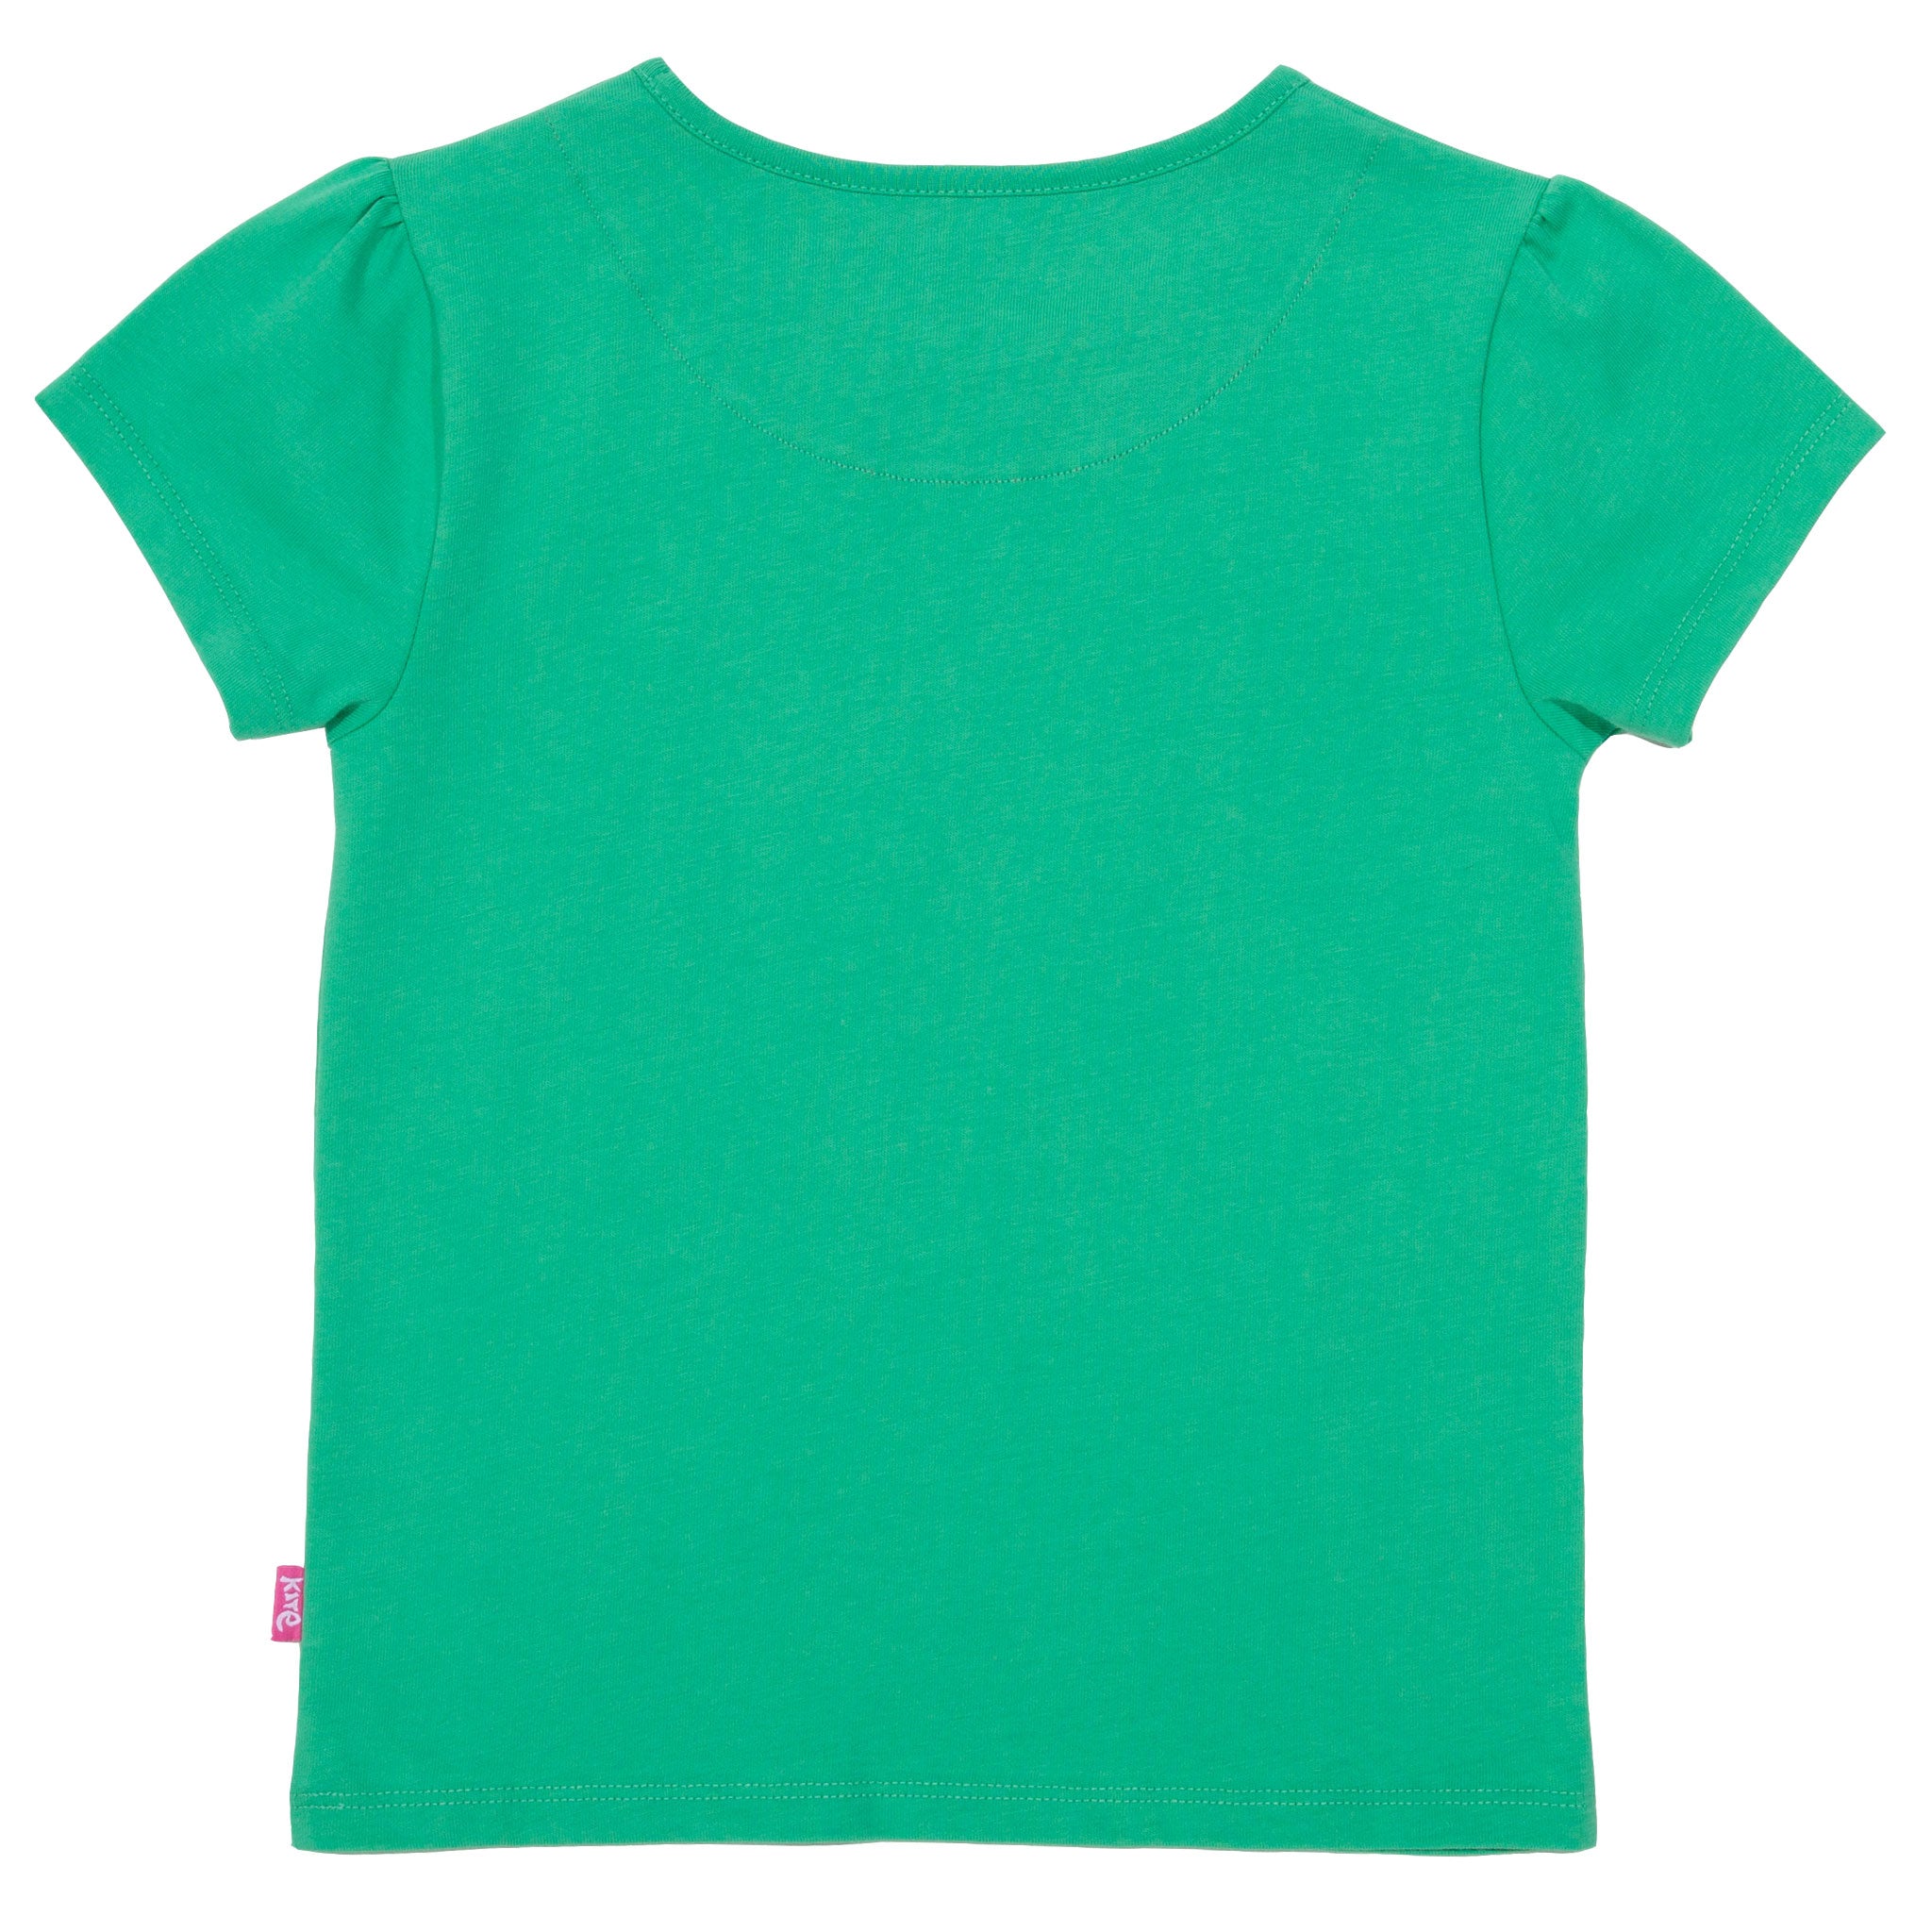 Kite Butterfly T-Shirt Short Sleeve - Green^